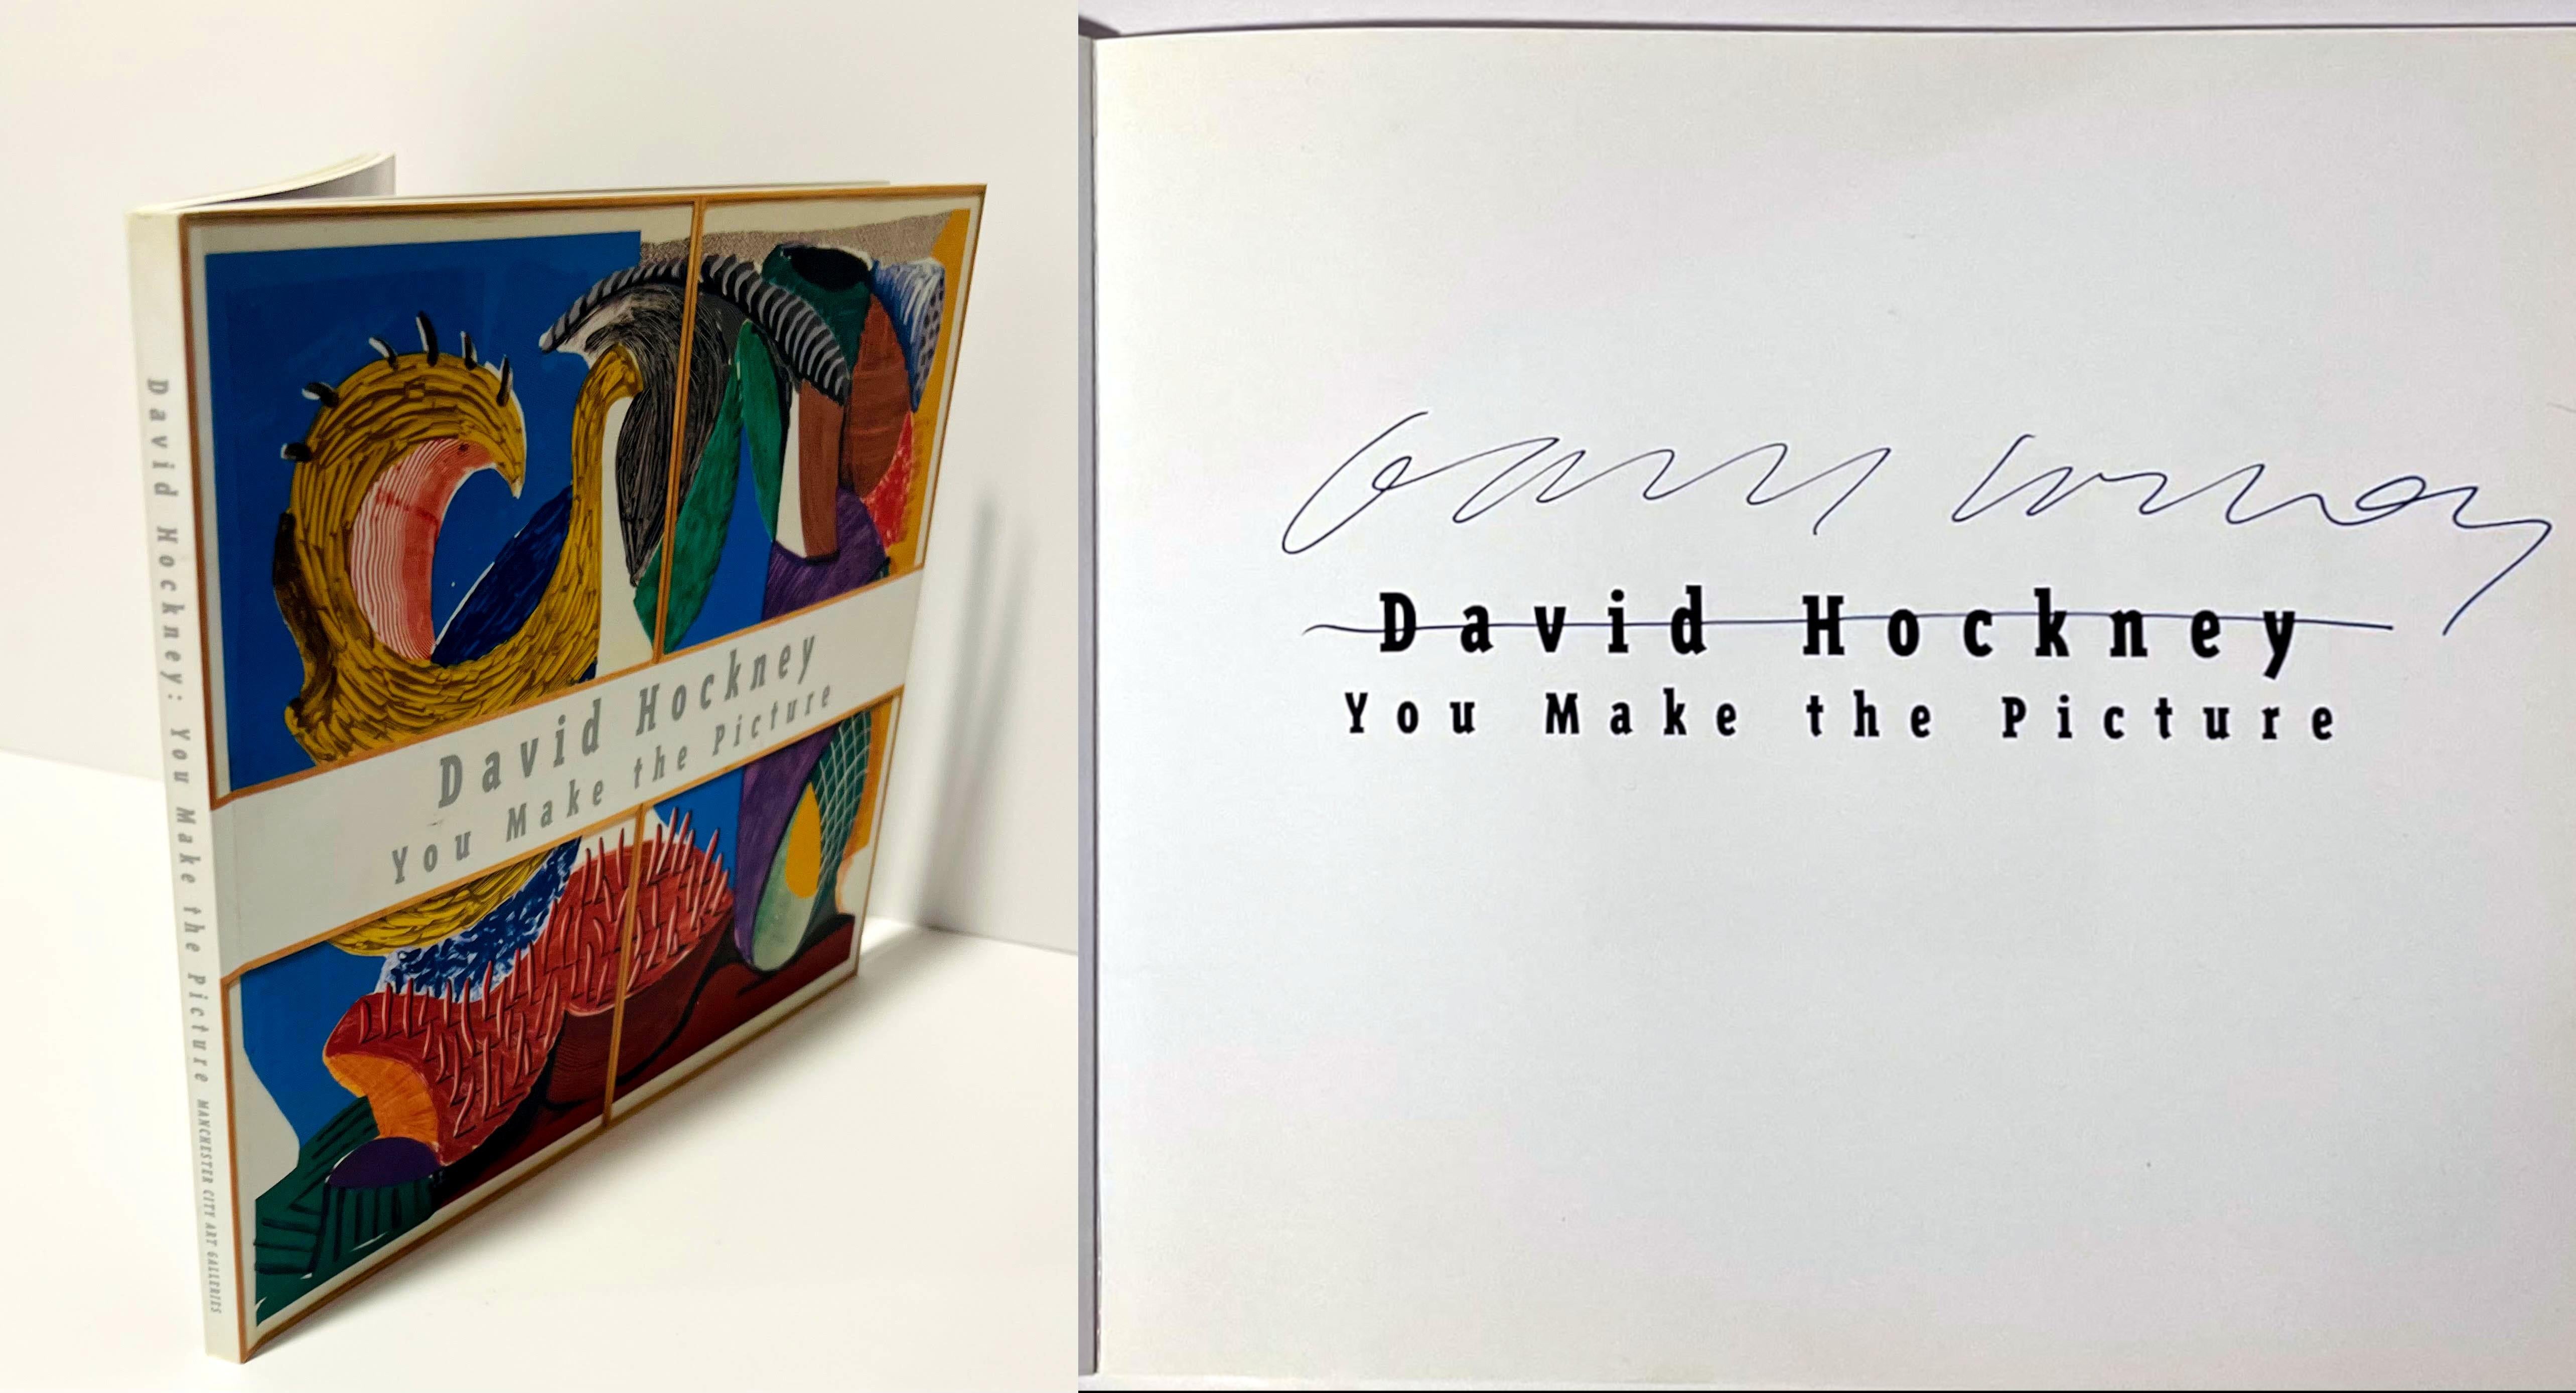 David Hockney
You Make the Picture (signé par David Hockney), 1996
Catalogue broché avec couverture rigide et rabats pliés à la française (signé à la main par David Hockney).
signé à la main par David Hockney sur la demi-page de titre
9 × 8 × 1/2